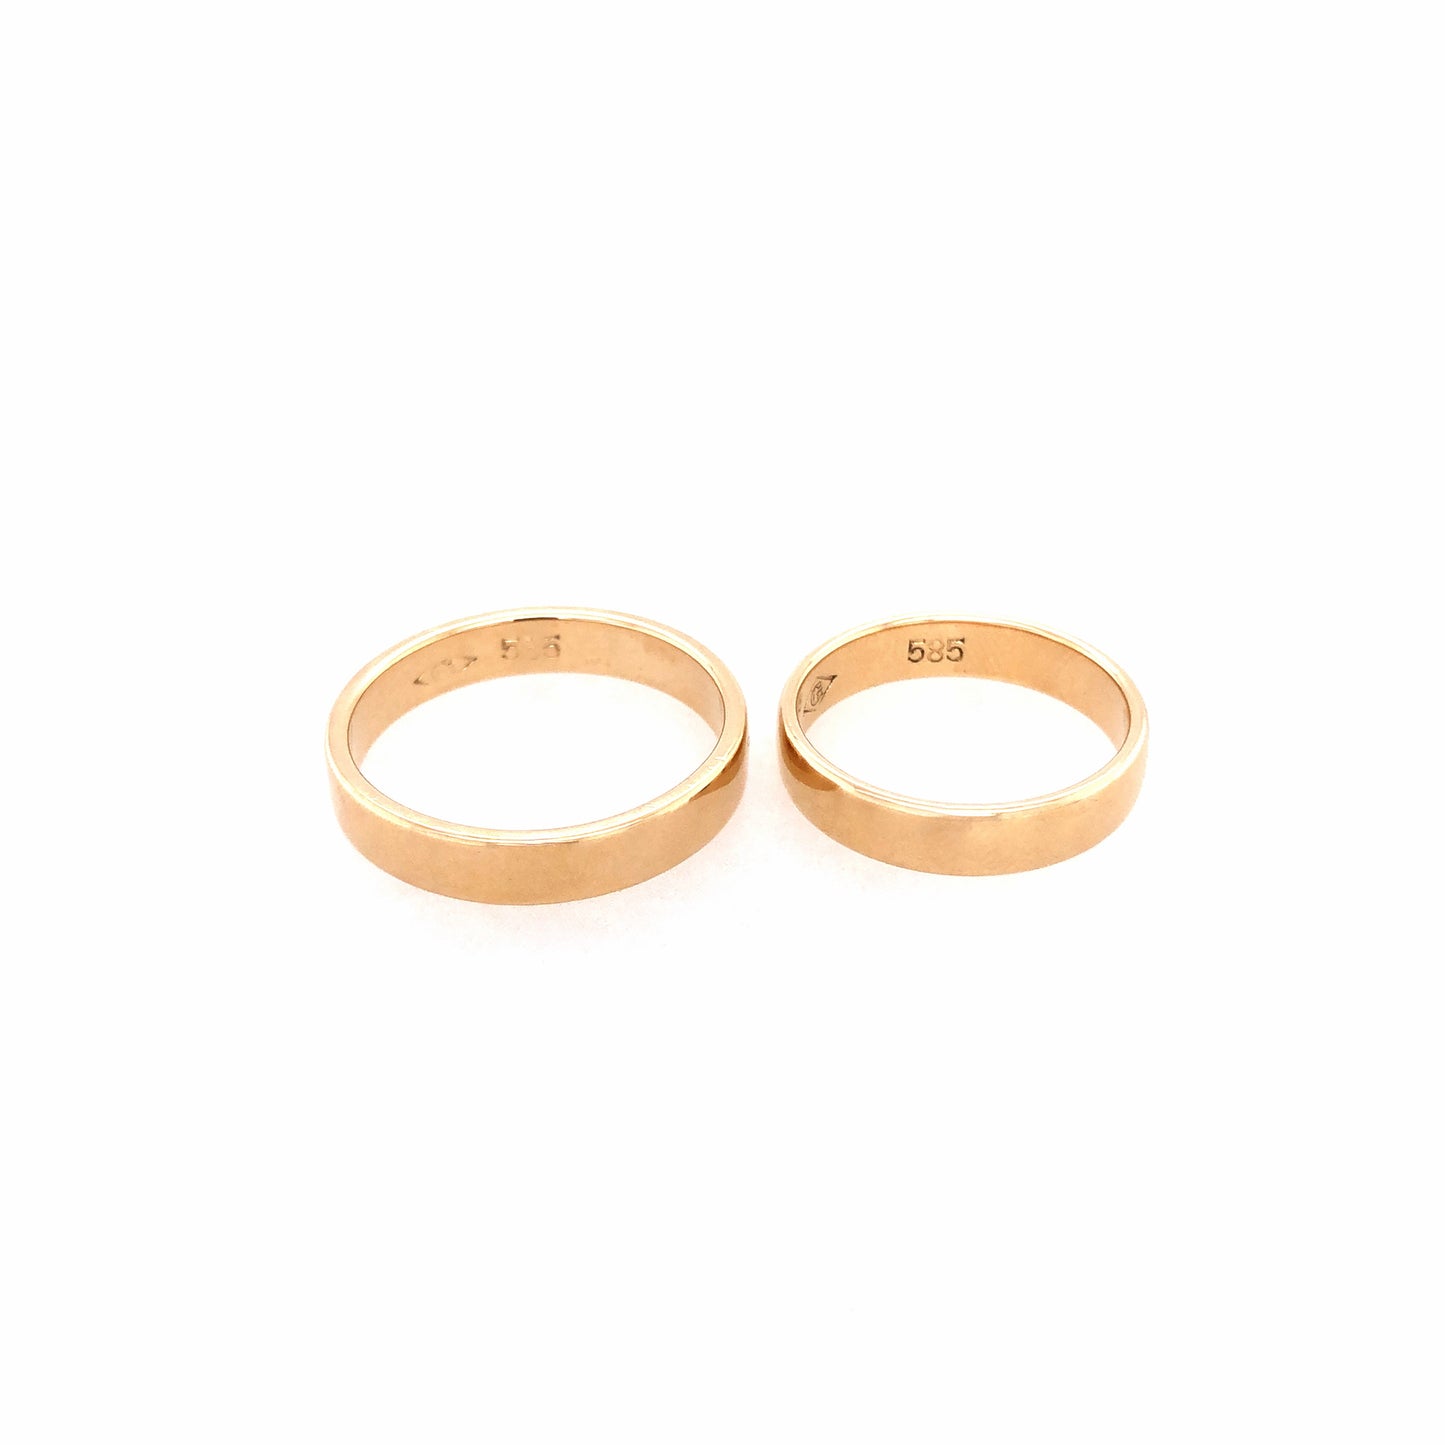 Ring Gold 585 / 14k Eheringe Set schlicht Gr.59 & 51